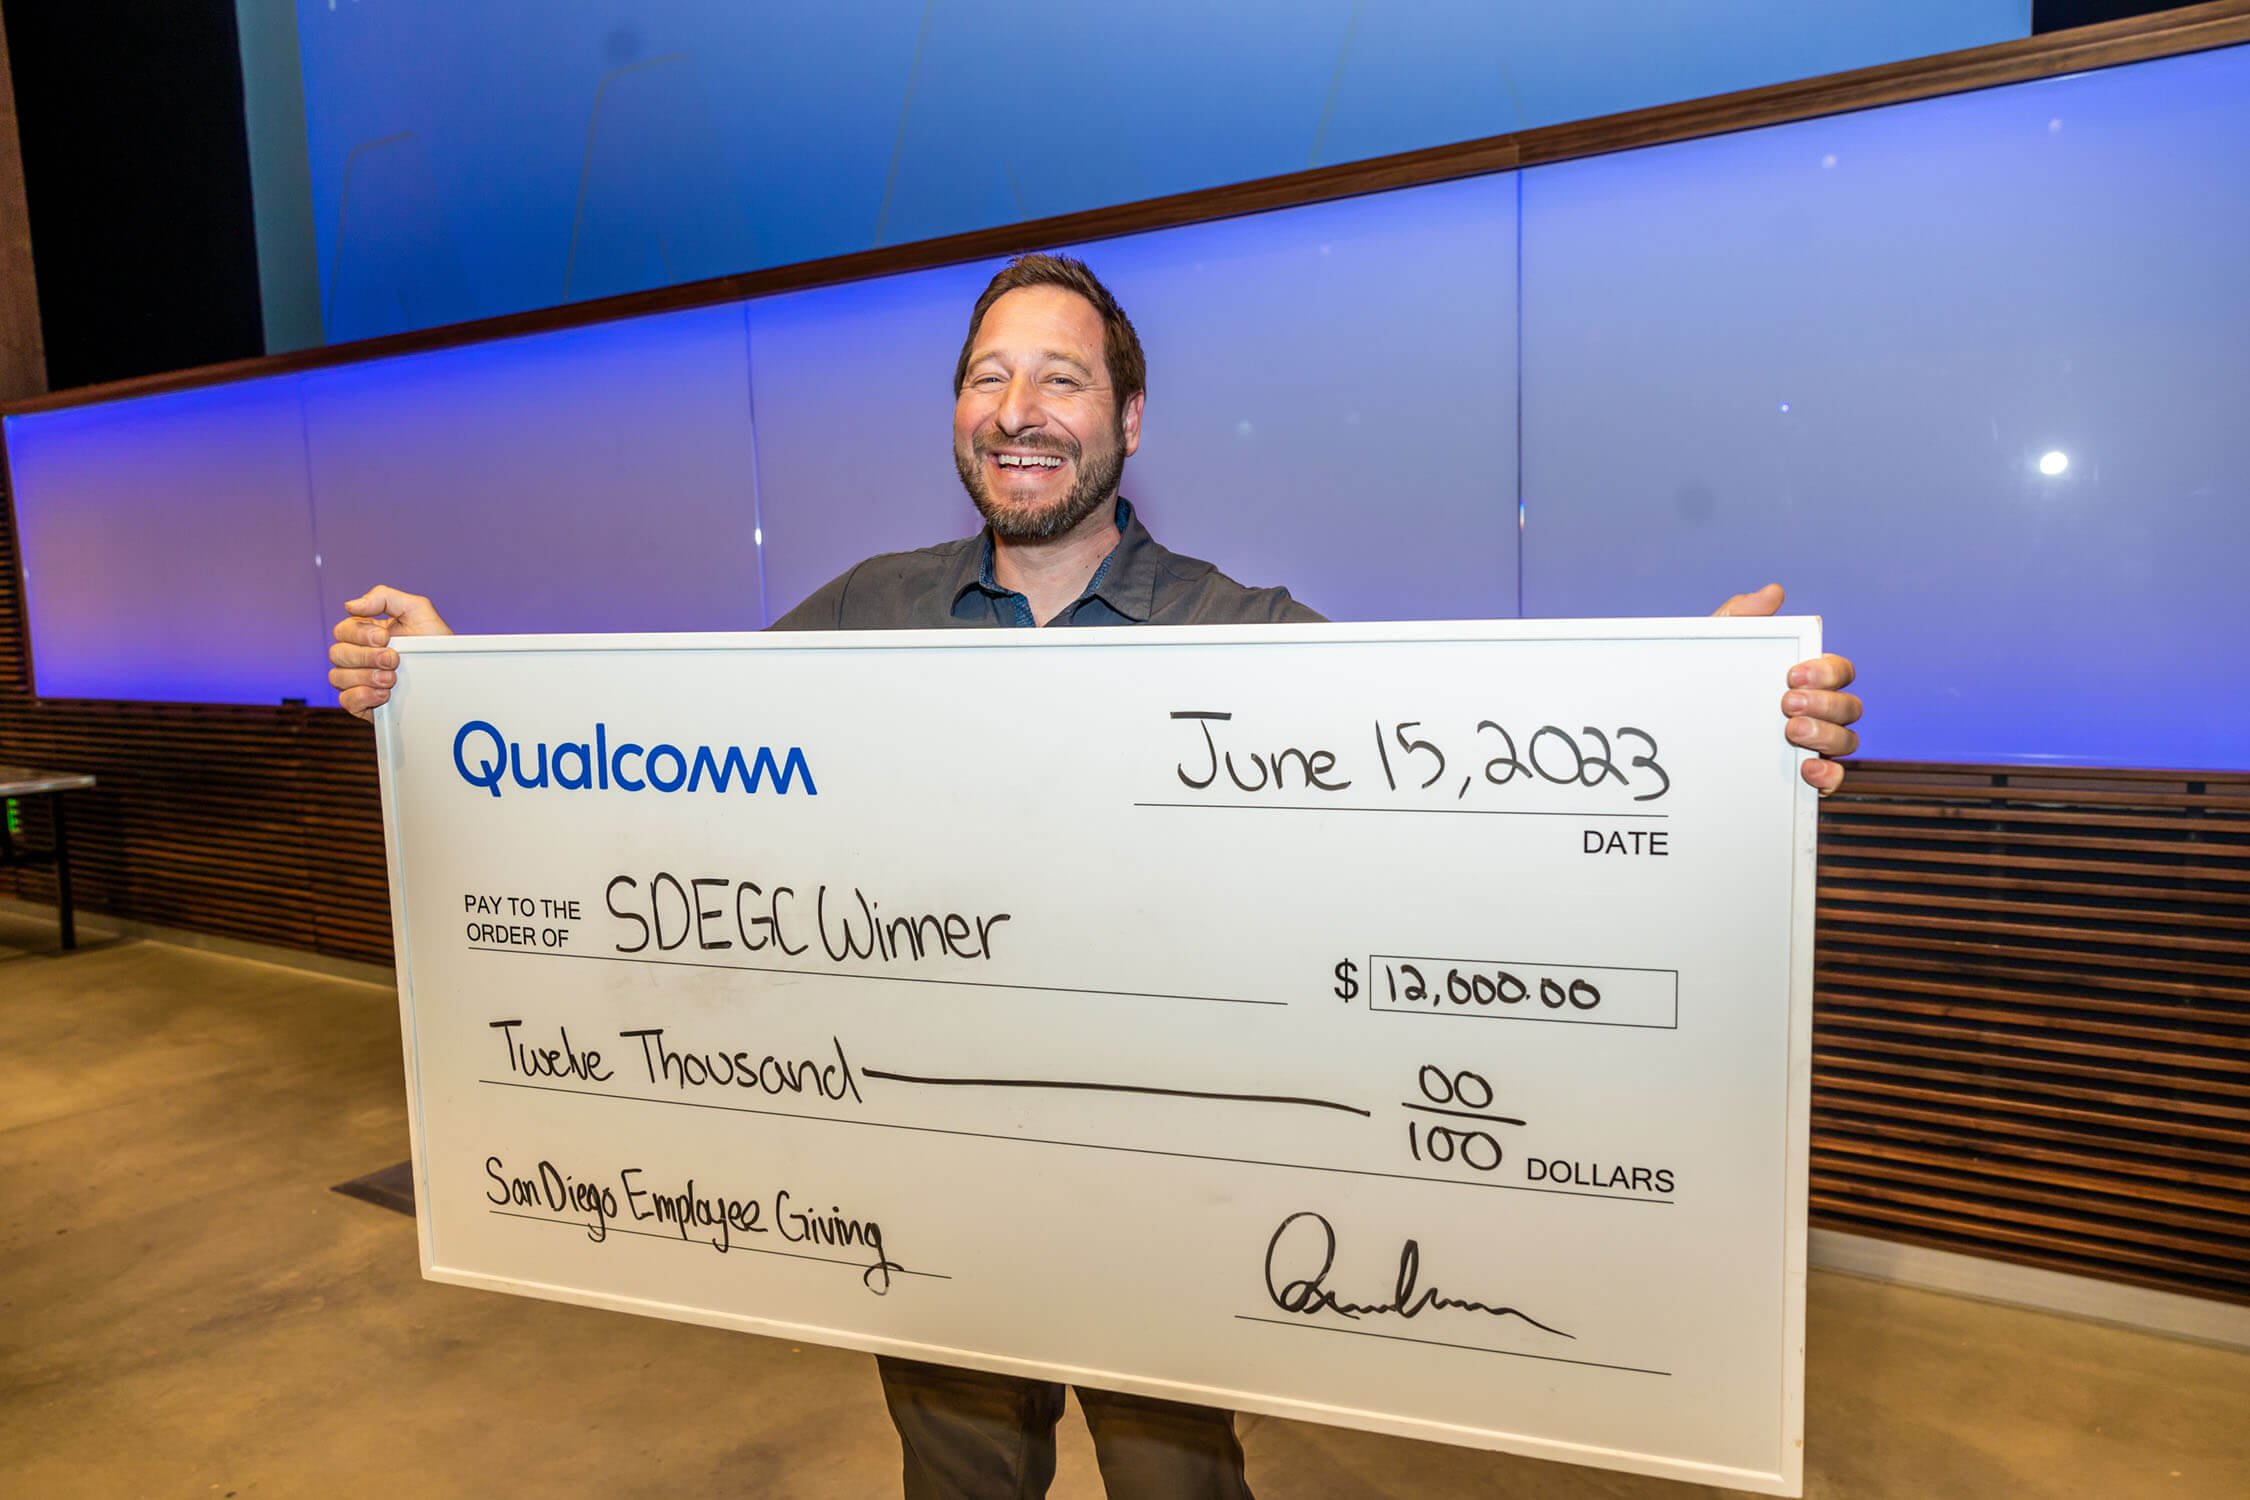 Qualcomm-SDEGC-Winner-holding-giant-check-for-twelve-thousand-dollars.jpg